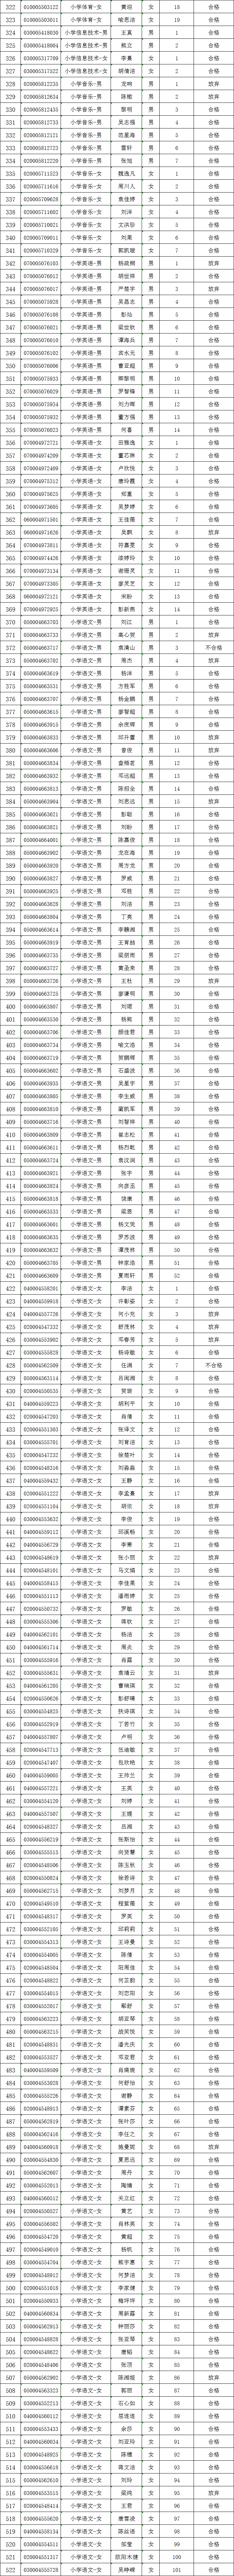 2021年长沙县第一批次教师招聘资格复审结果公示(图2)